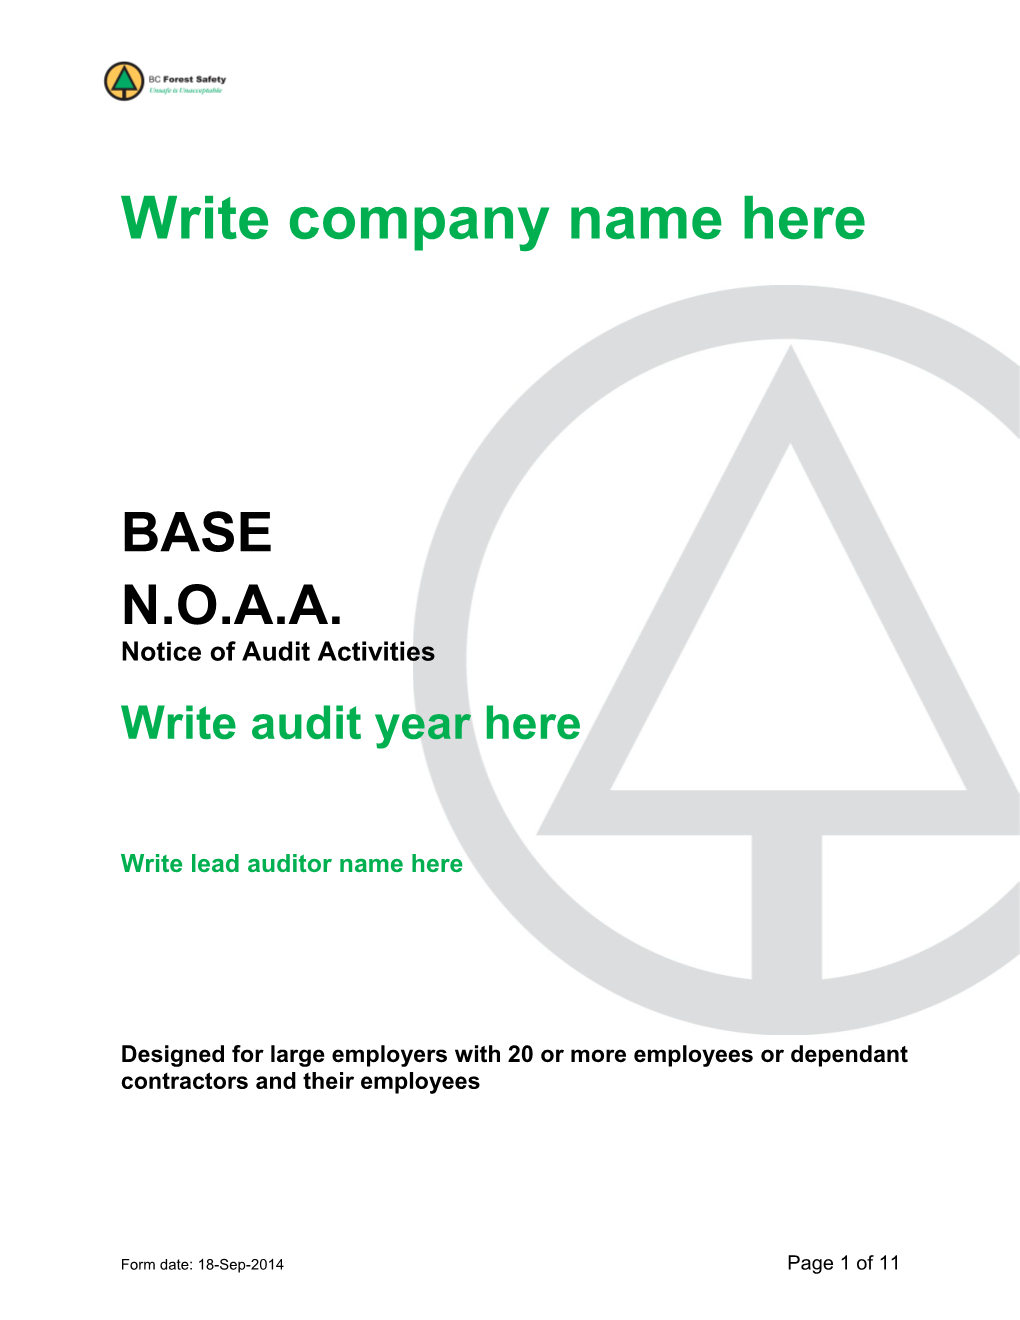 Write Company Name Here